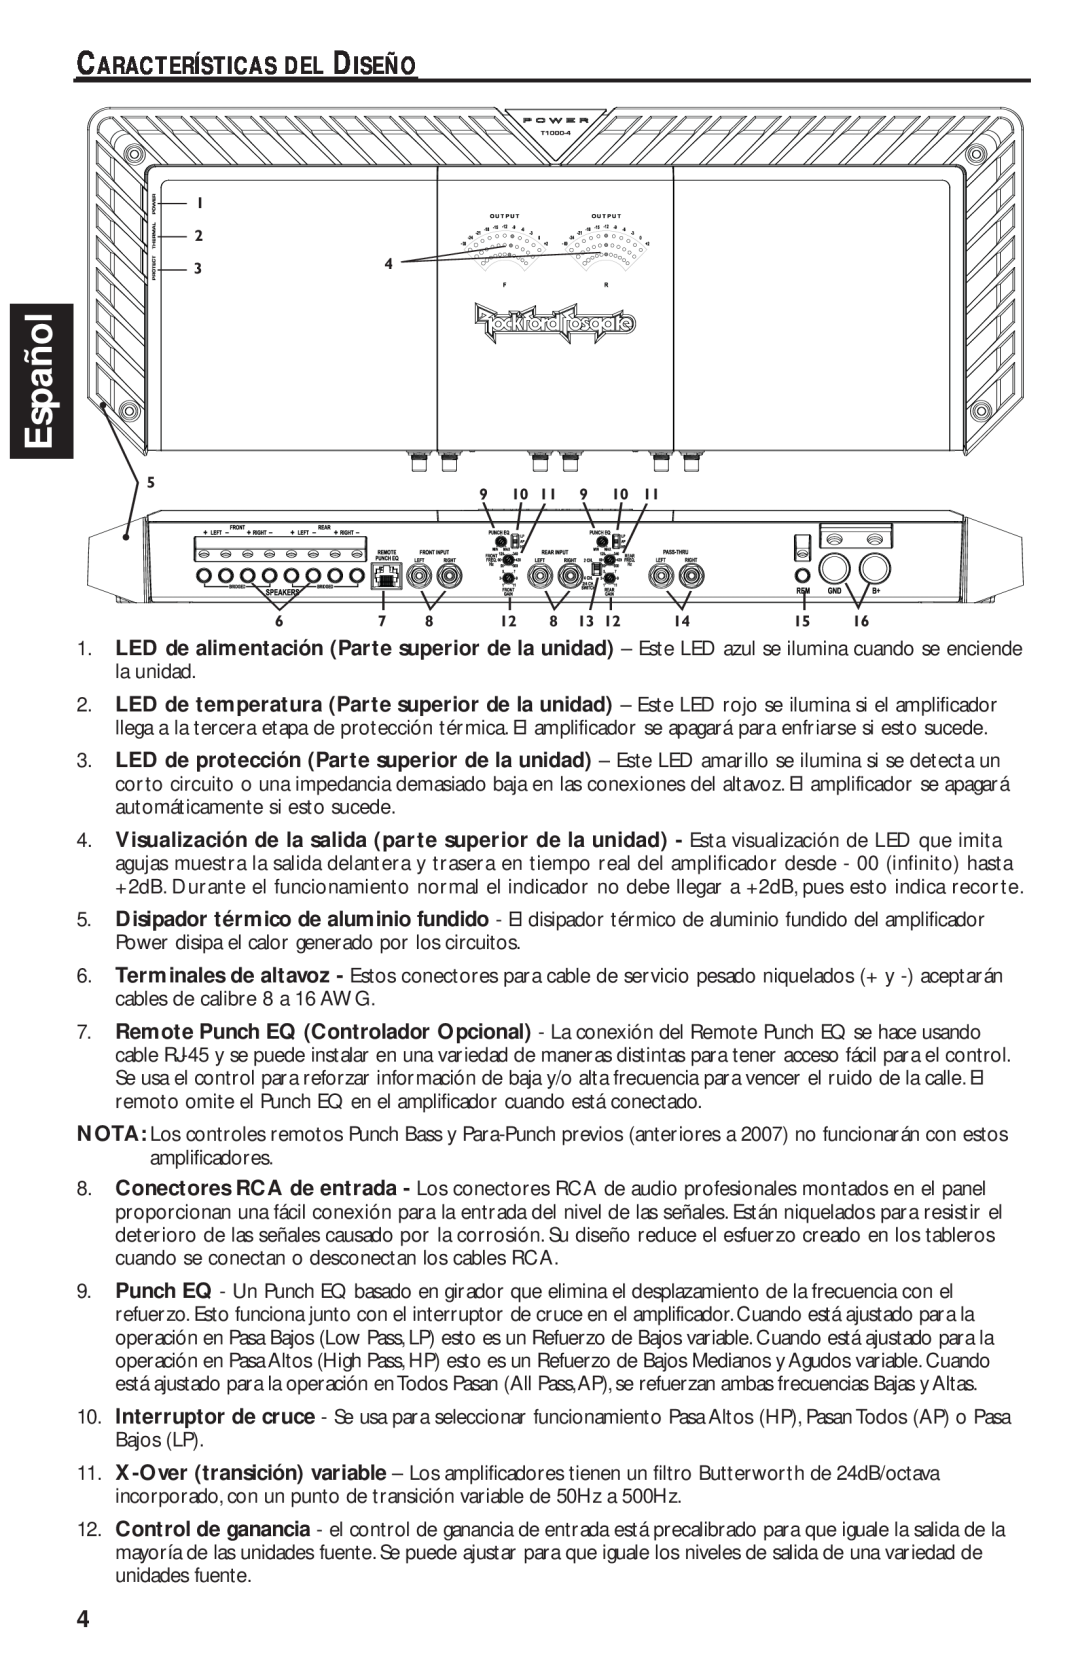 Rockford Fosgate T1000-4 Español, Características Del Diseño, LED de temperatura Par, LED de protección Parte superior 